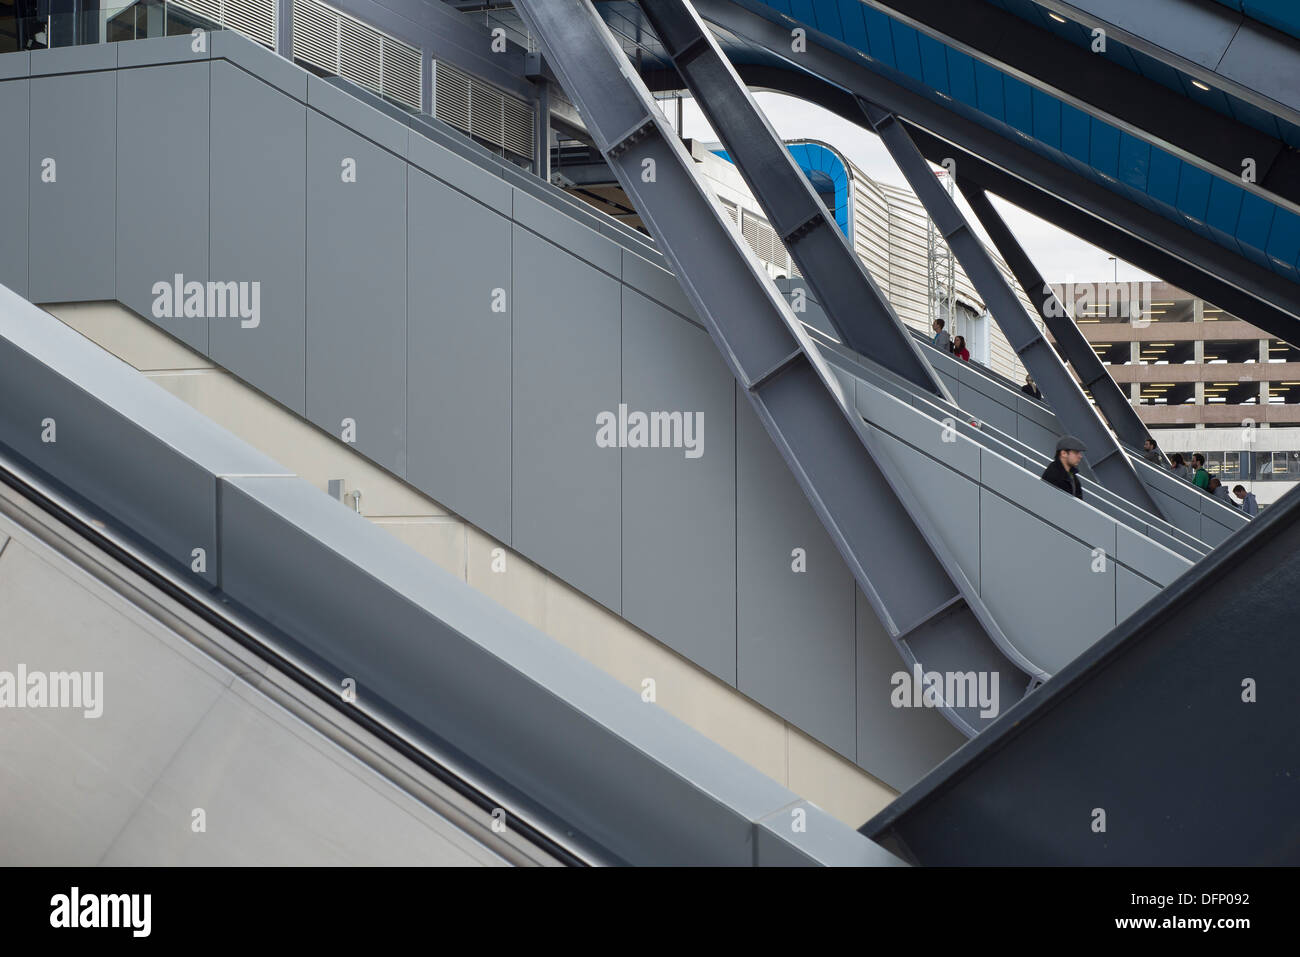 La lettura di stazione ferroviaria, Reading, Regno Unito. Architetto: Grimshaw, 2015. Dettaglio del telaio in acciaio con scale mobili. Foto Stock